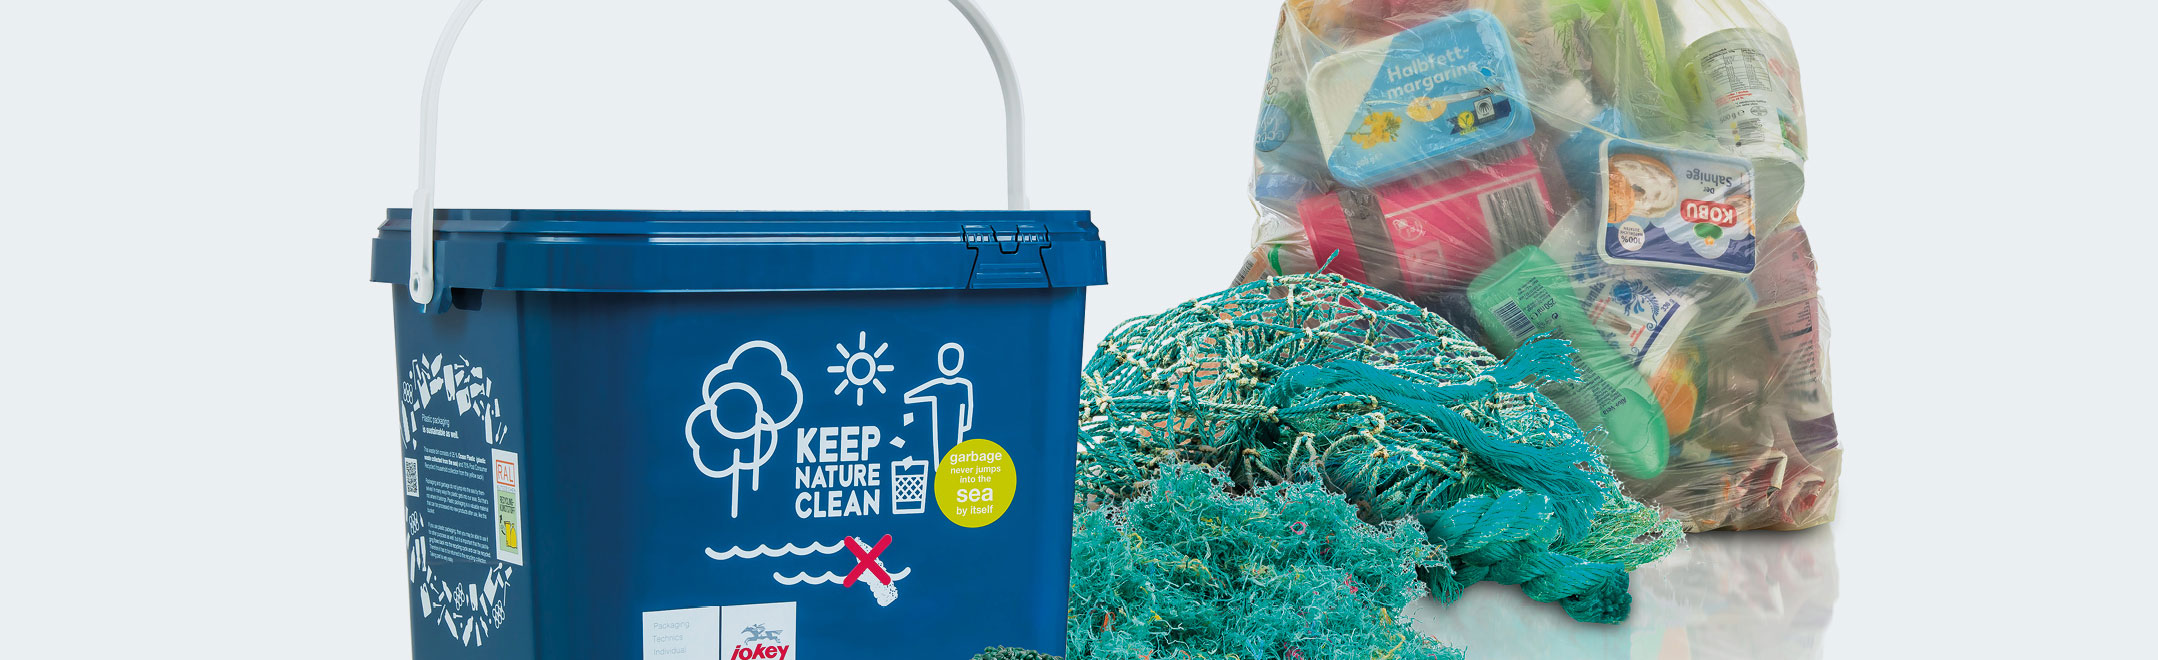 Kunststoffabfälle und Eimer mit Logoaufdruck Keep nature clean